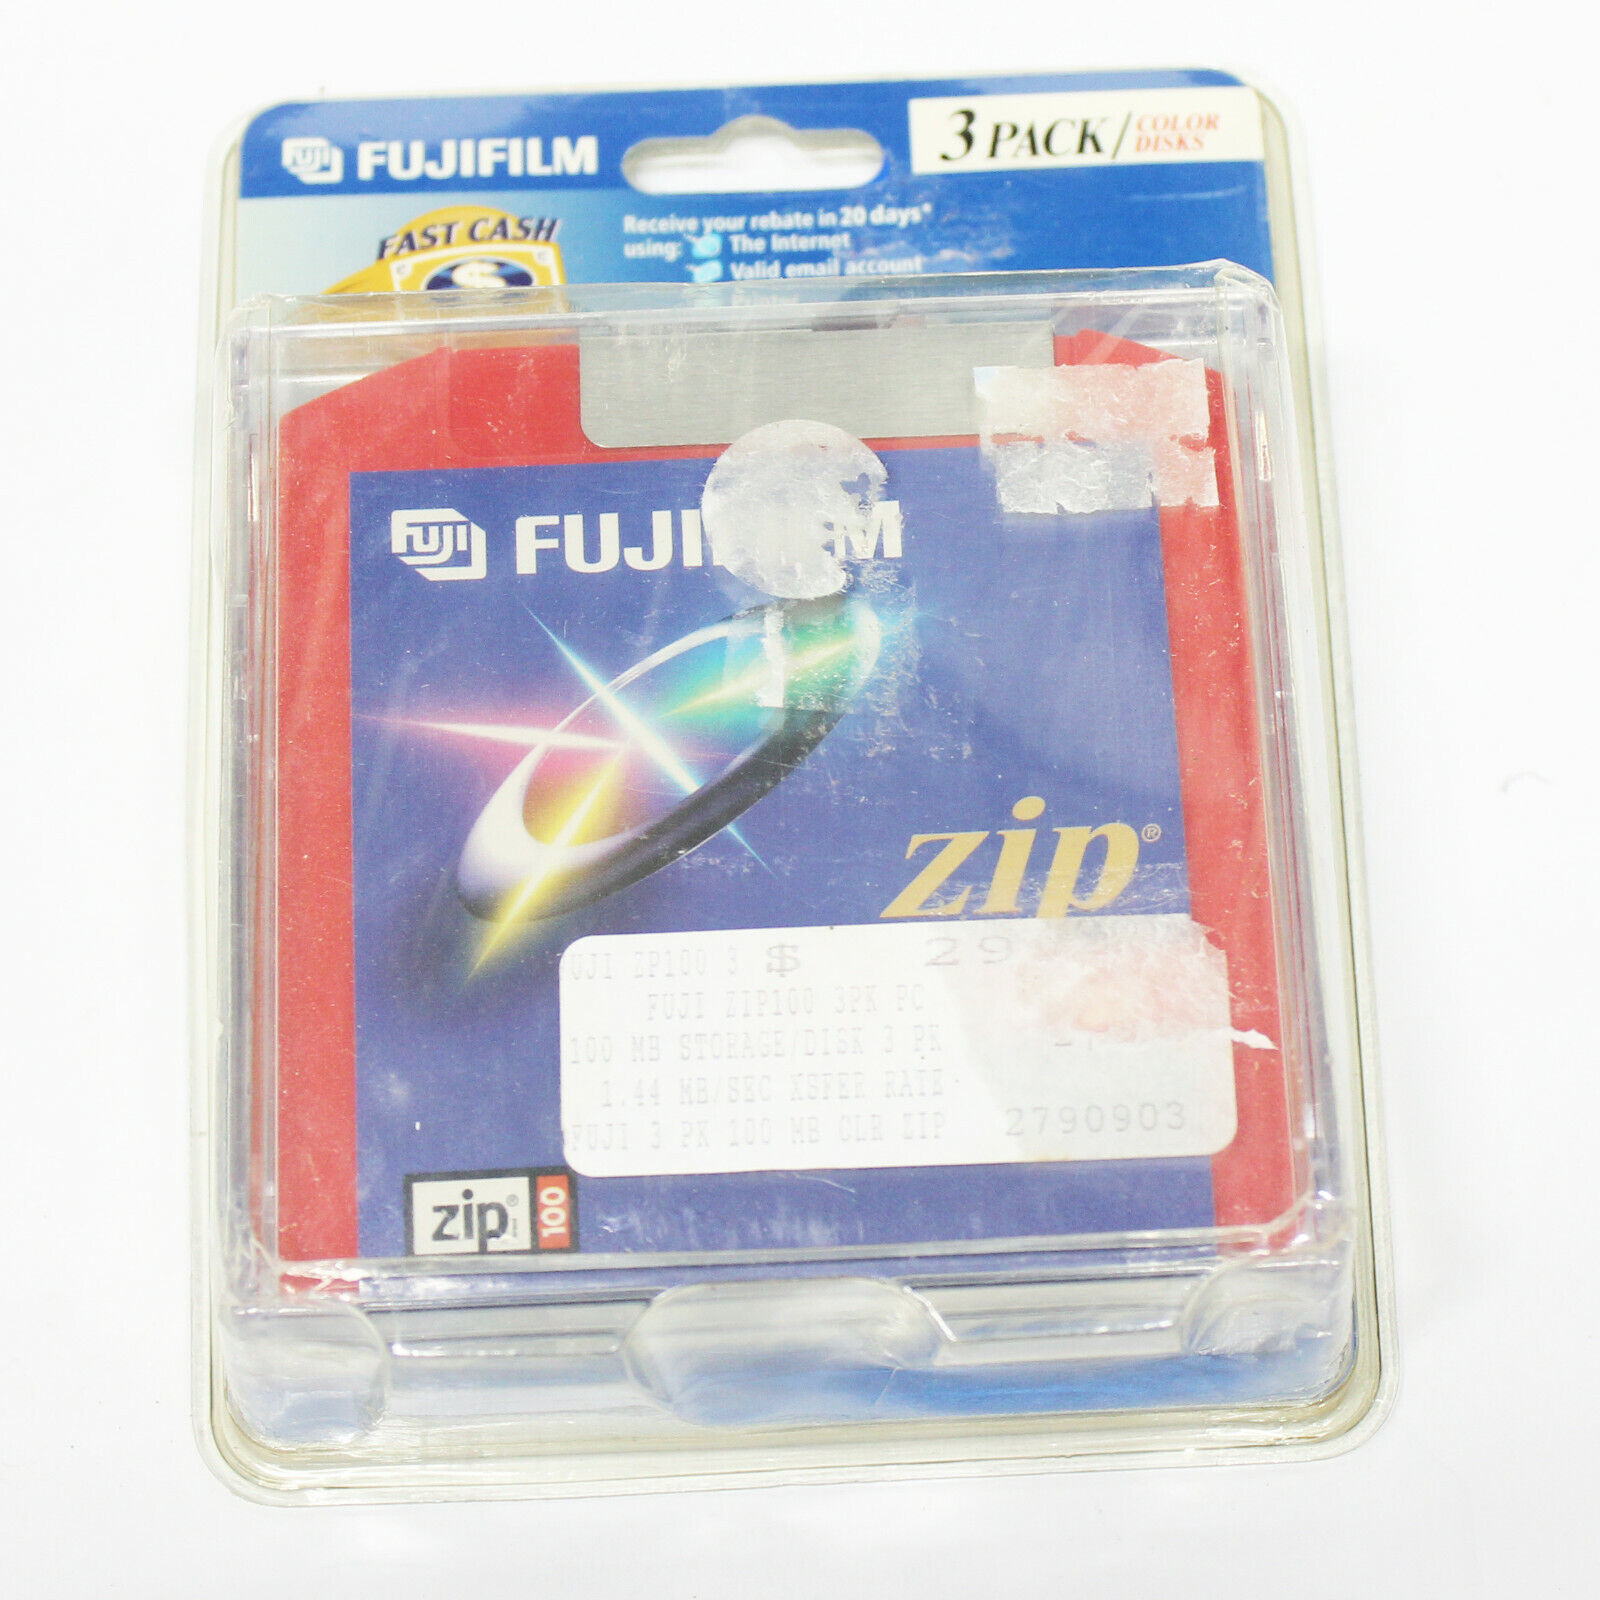 Pack of 3 NEW Fuji Film Zip 100 MB Disks Colored Fujifilm 100mb